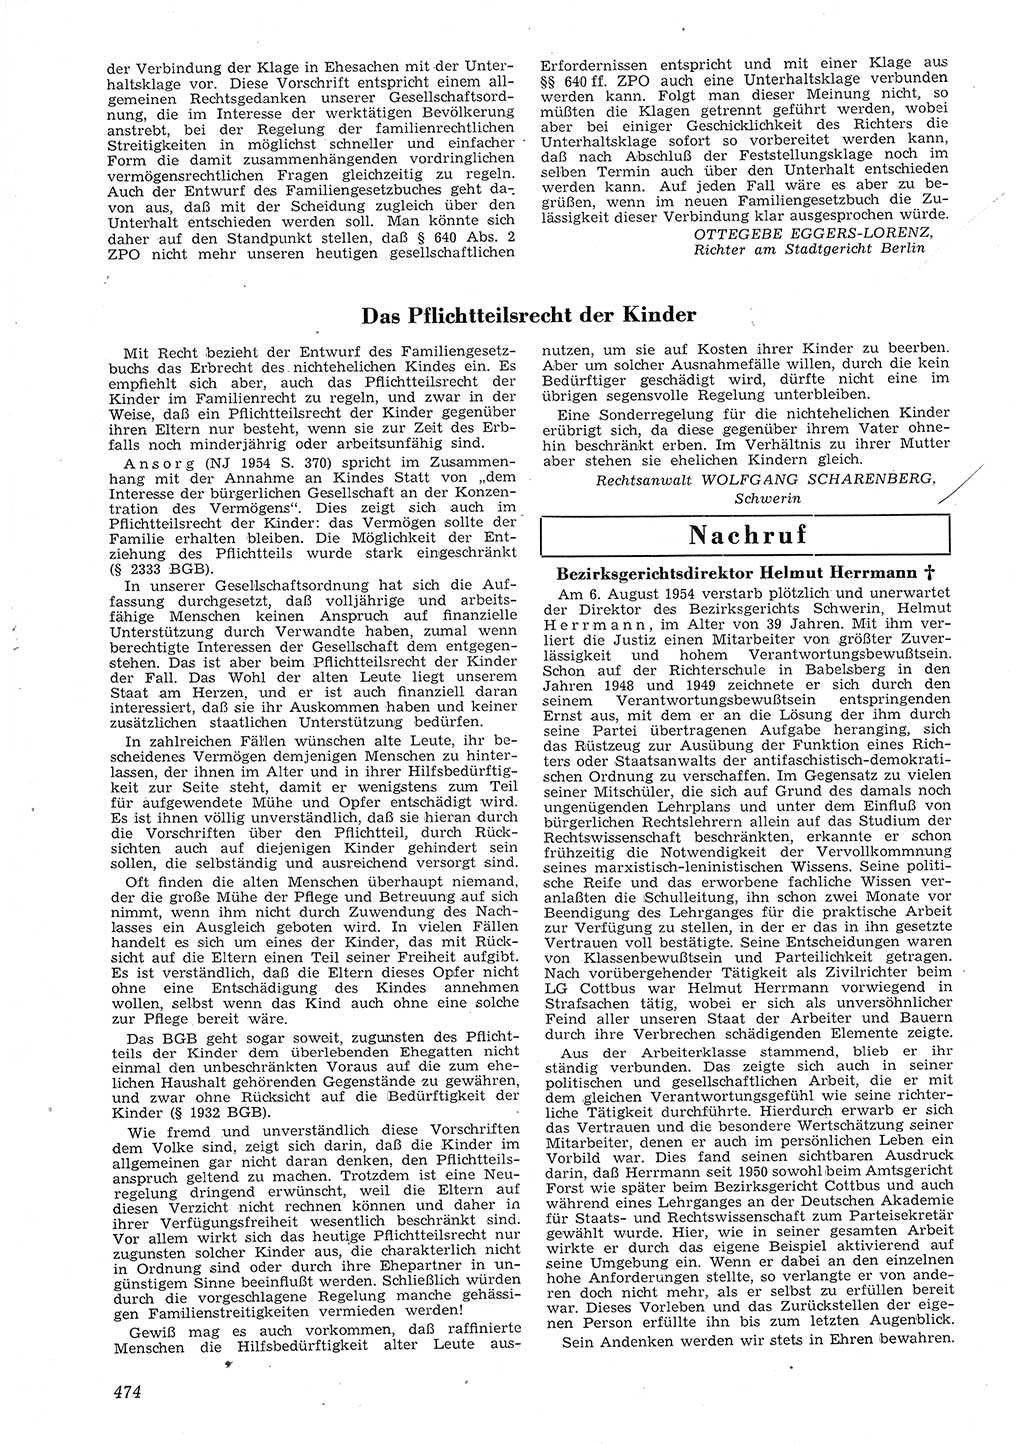 Neue Justiz (NJ), Zeitschrift für Recht und Rechtswissenschaft [Deutsche Demokratische Republik (DDR)], 8. Jahrgang 1954, Seite 474 (NJ DDR 1954, S. 474)